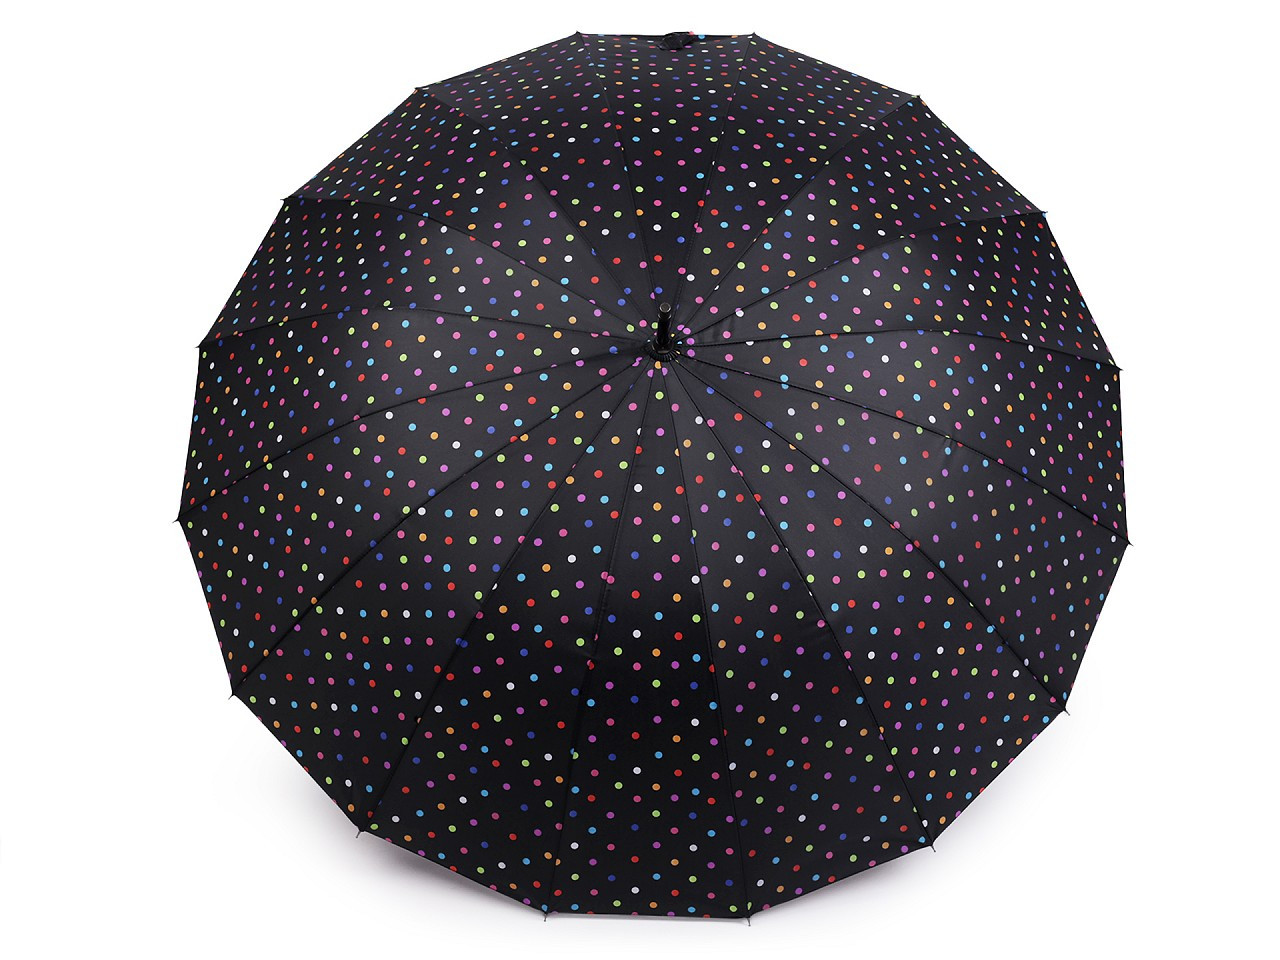 Velký rodinný deštník s puntíky, barva 4 černá